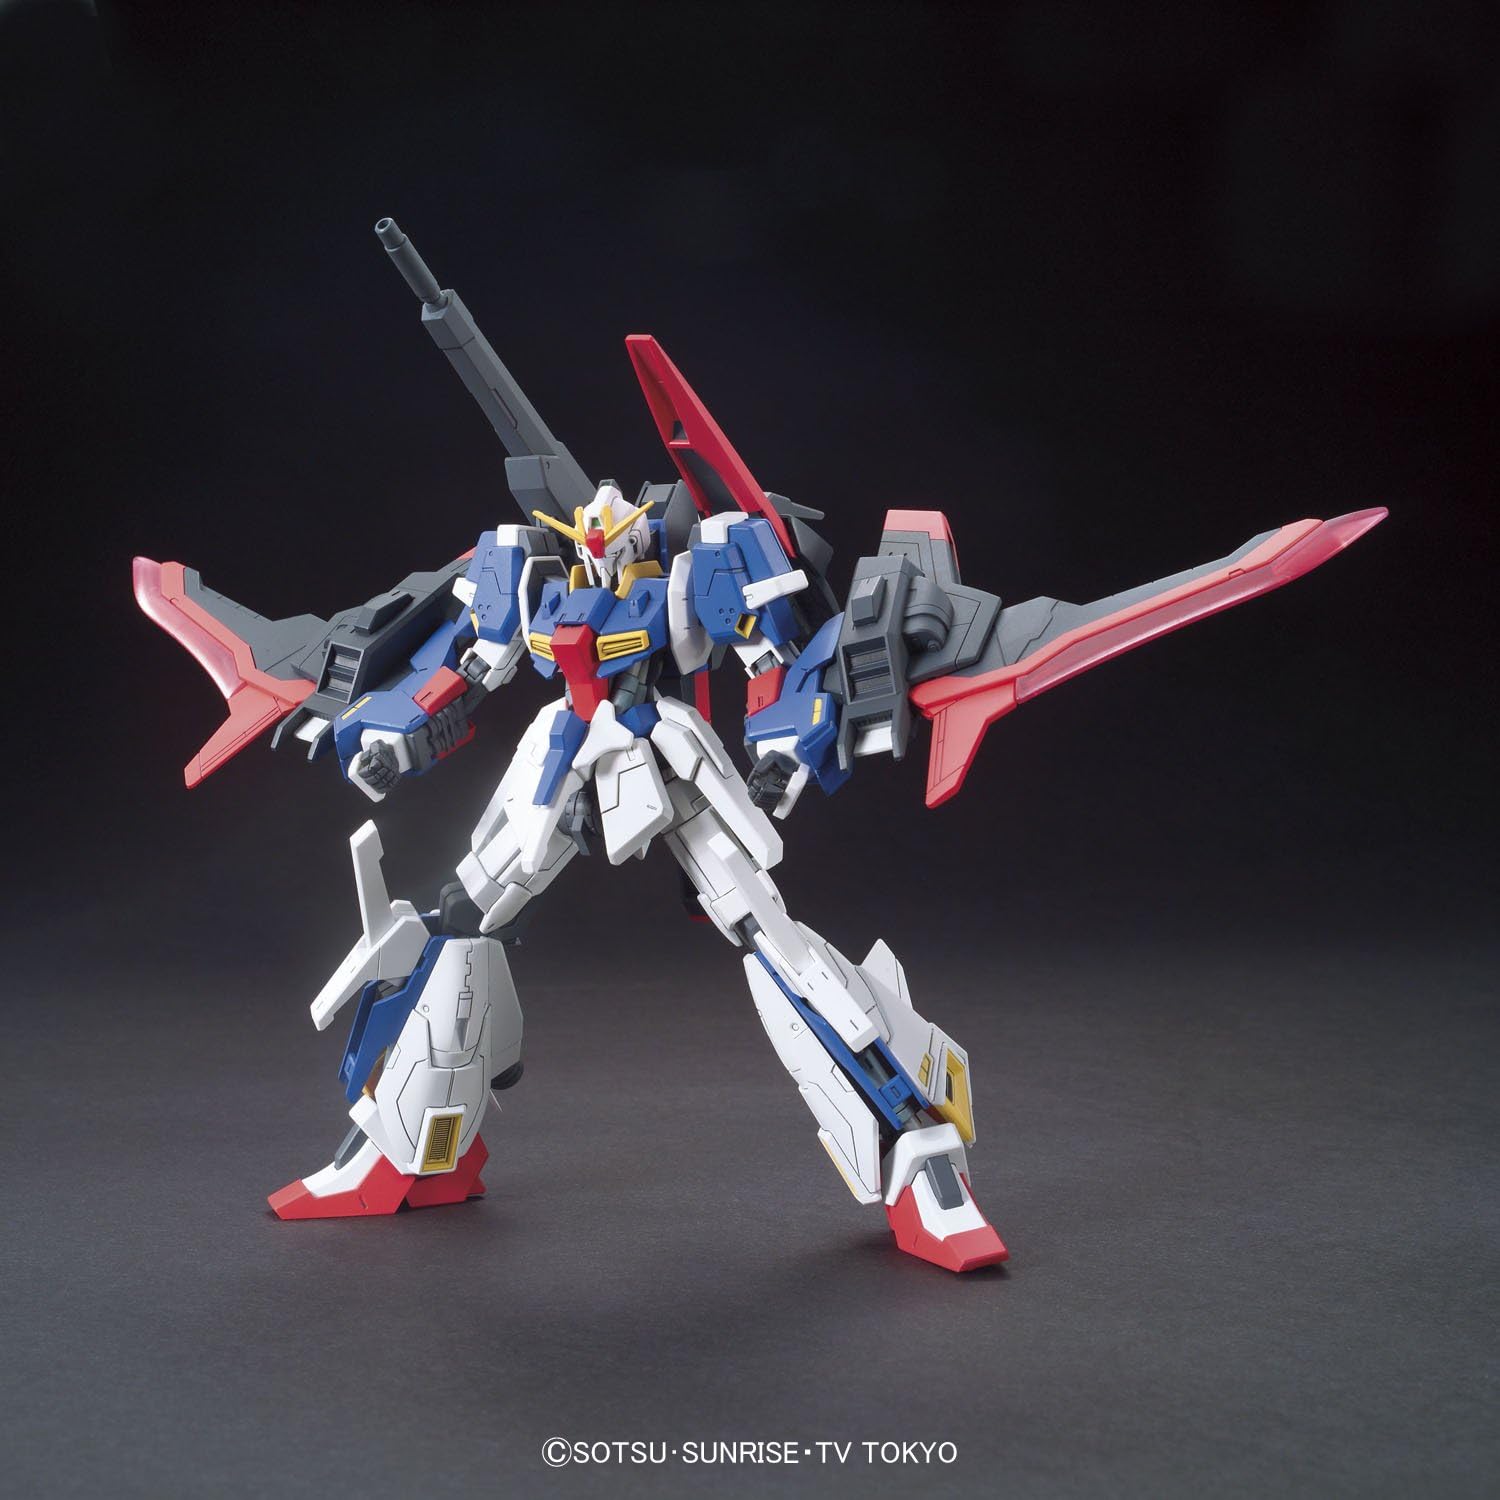 1/144 HGBF Lightning Z Gundam | animota